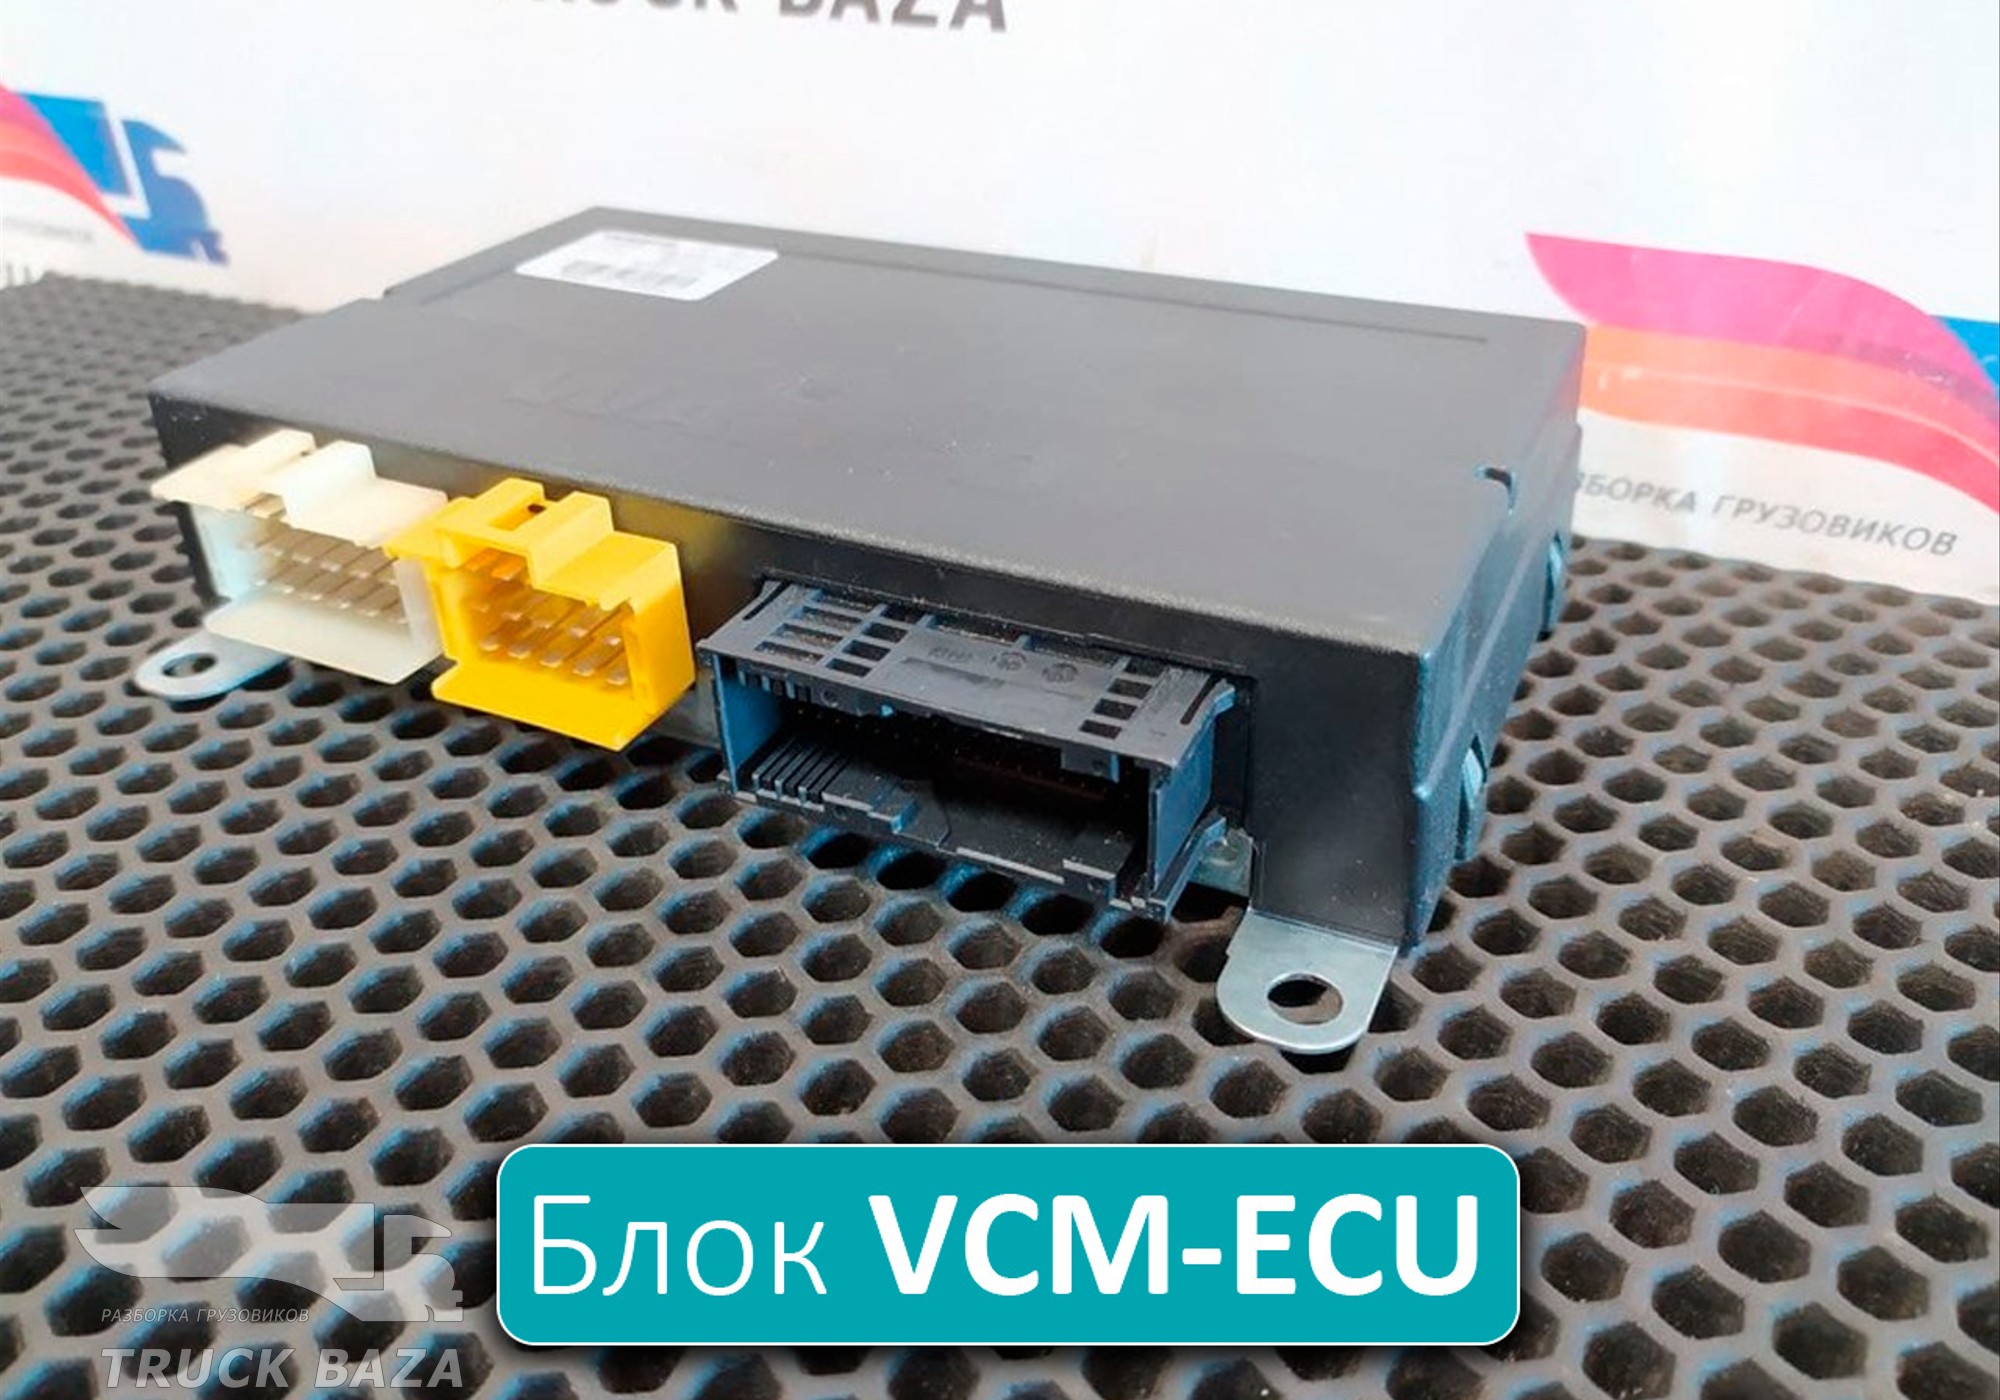 504342304 Блок управления VCM-ECU для Iveco Stralis I (с 2002)